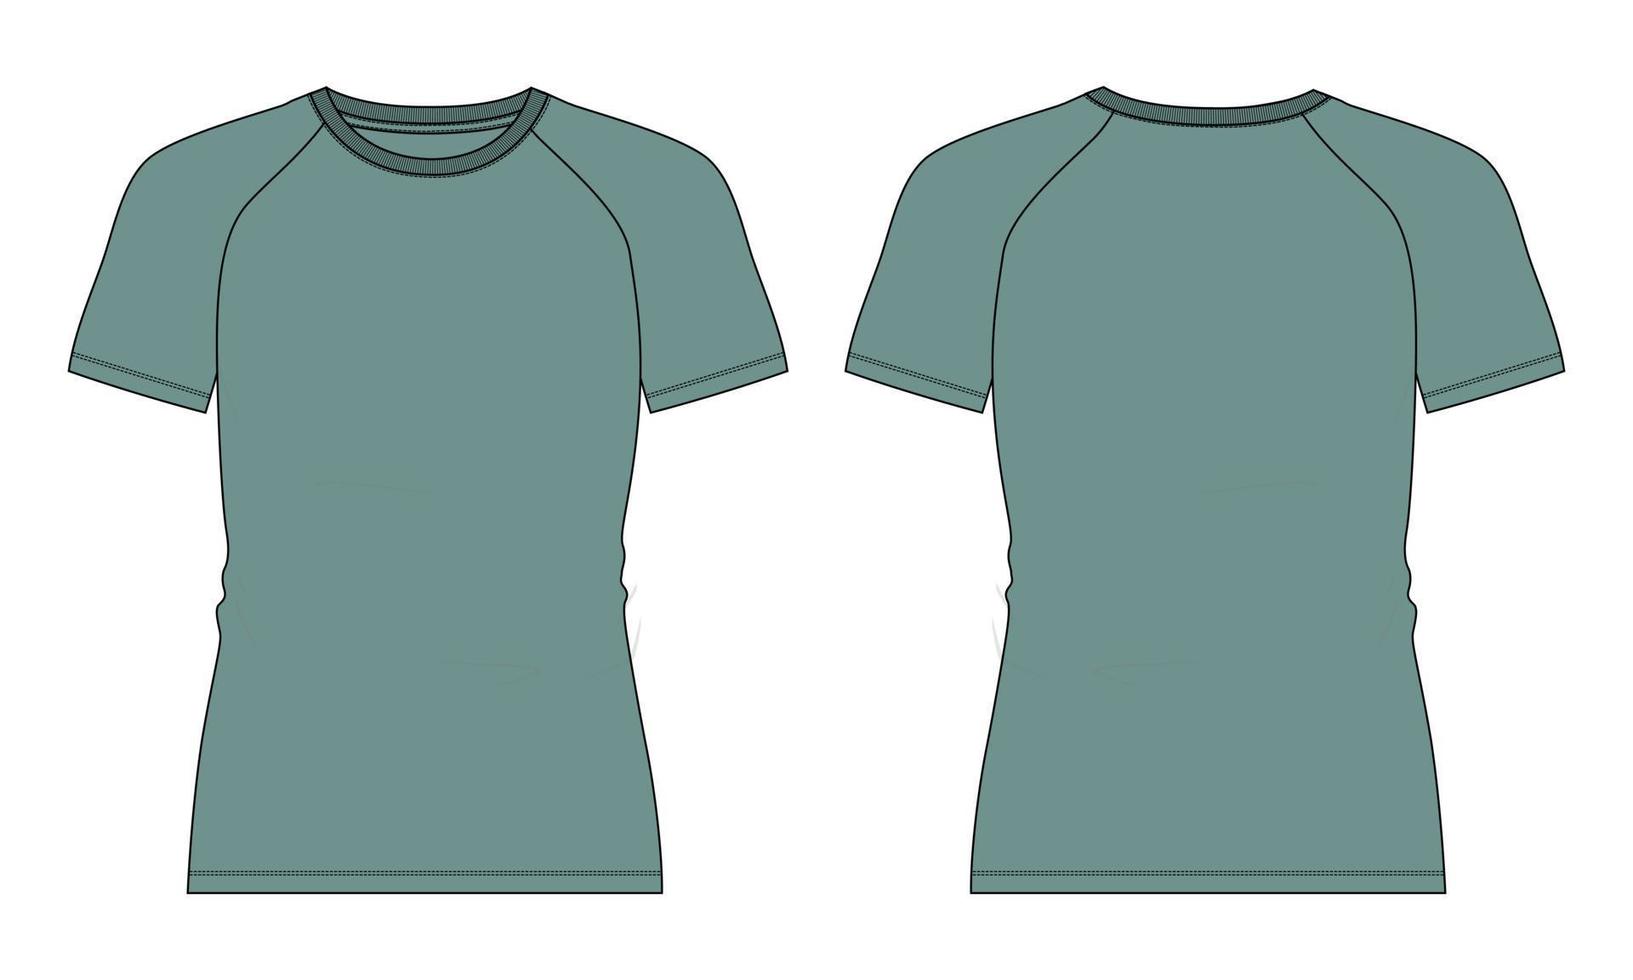 slim fit manga corta camiseta raglán moda técnica dibujo plano vector ilustración plantilla de color verde vistas frontal y posterior aisladas sobre fondo blanco.